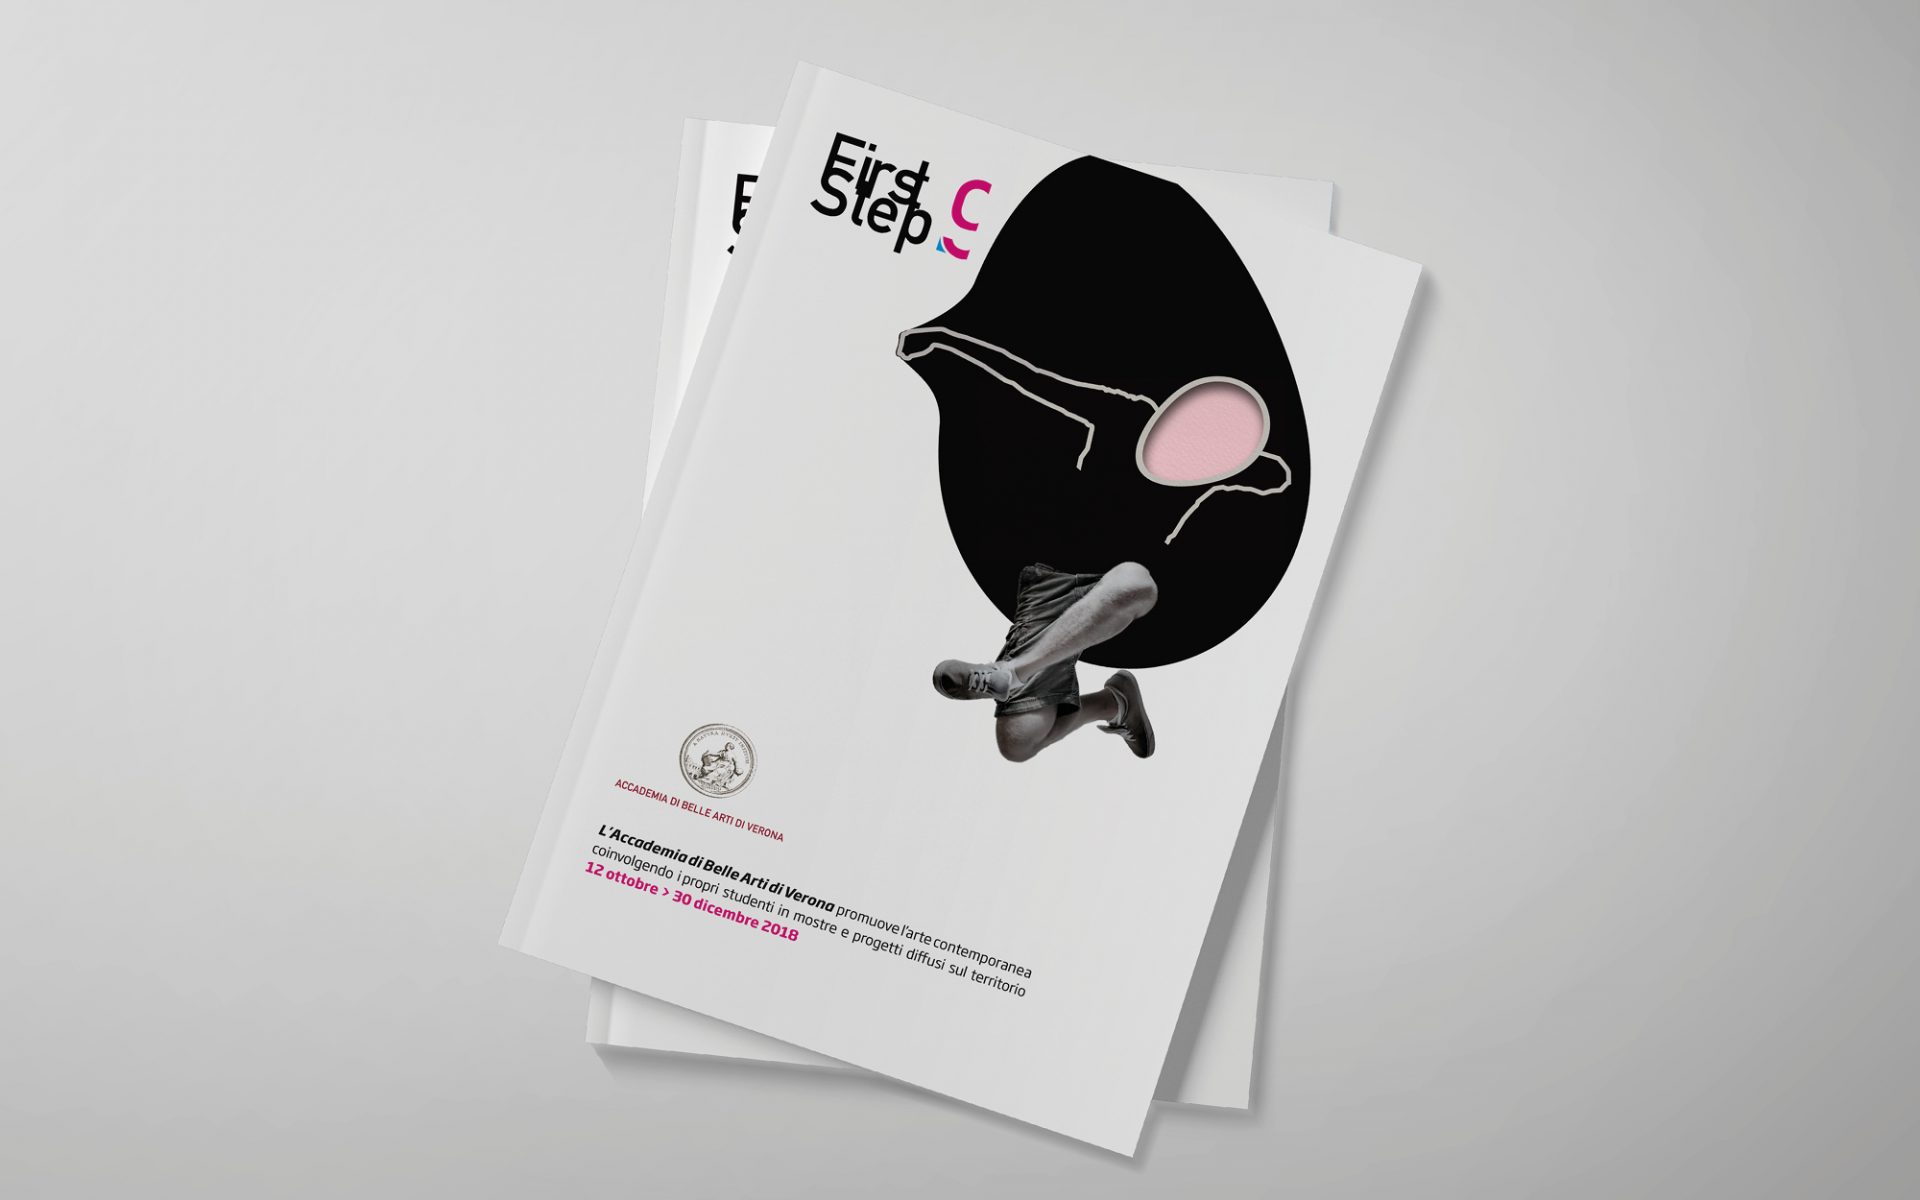 dettaglio di copertina della brochure First step 9 di Accademia belle arti Verona, progettata dallo studio di comunicazione Diade studio, vincitore del contest